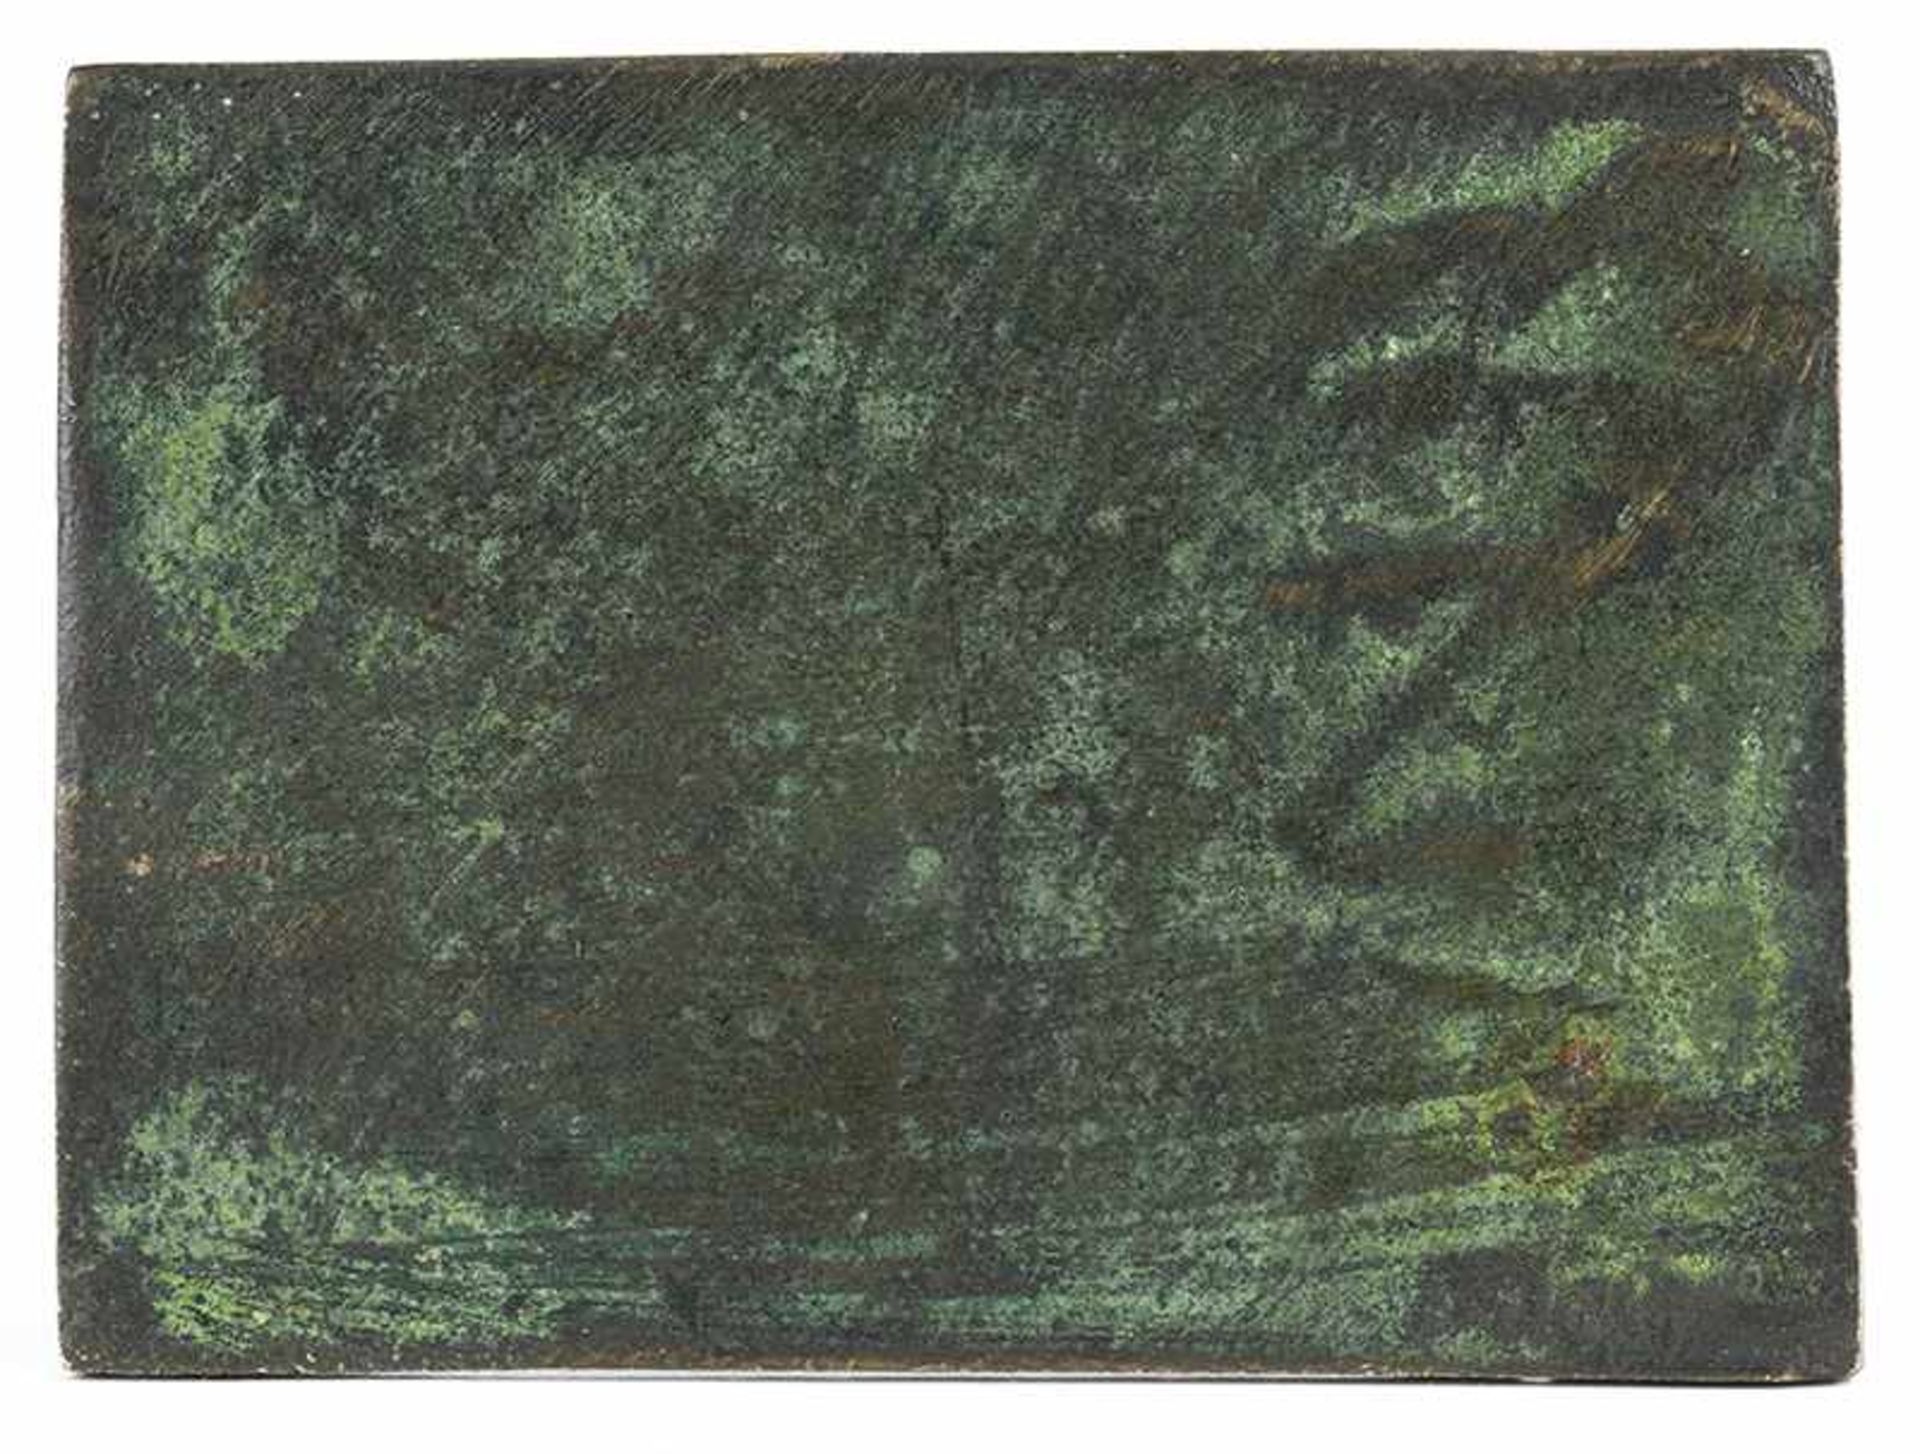 Andrea Briosco, 1470 Trento "" 1532 Padua RELIEFPLAKETTE: HULDIGUNG EINES HELDEN 7,5 x 10,2 cm. - Bild 5 aus 7